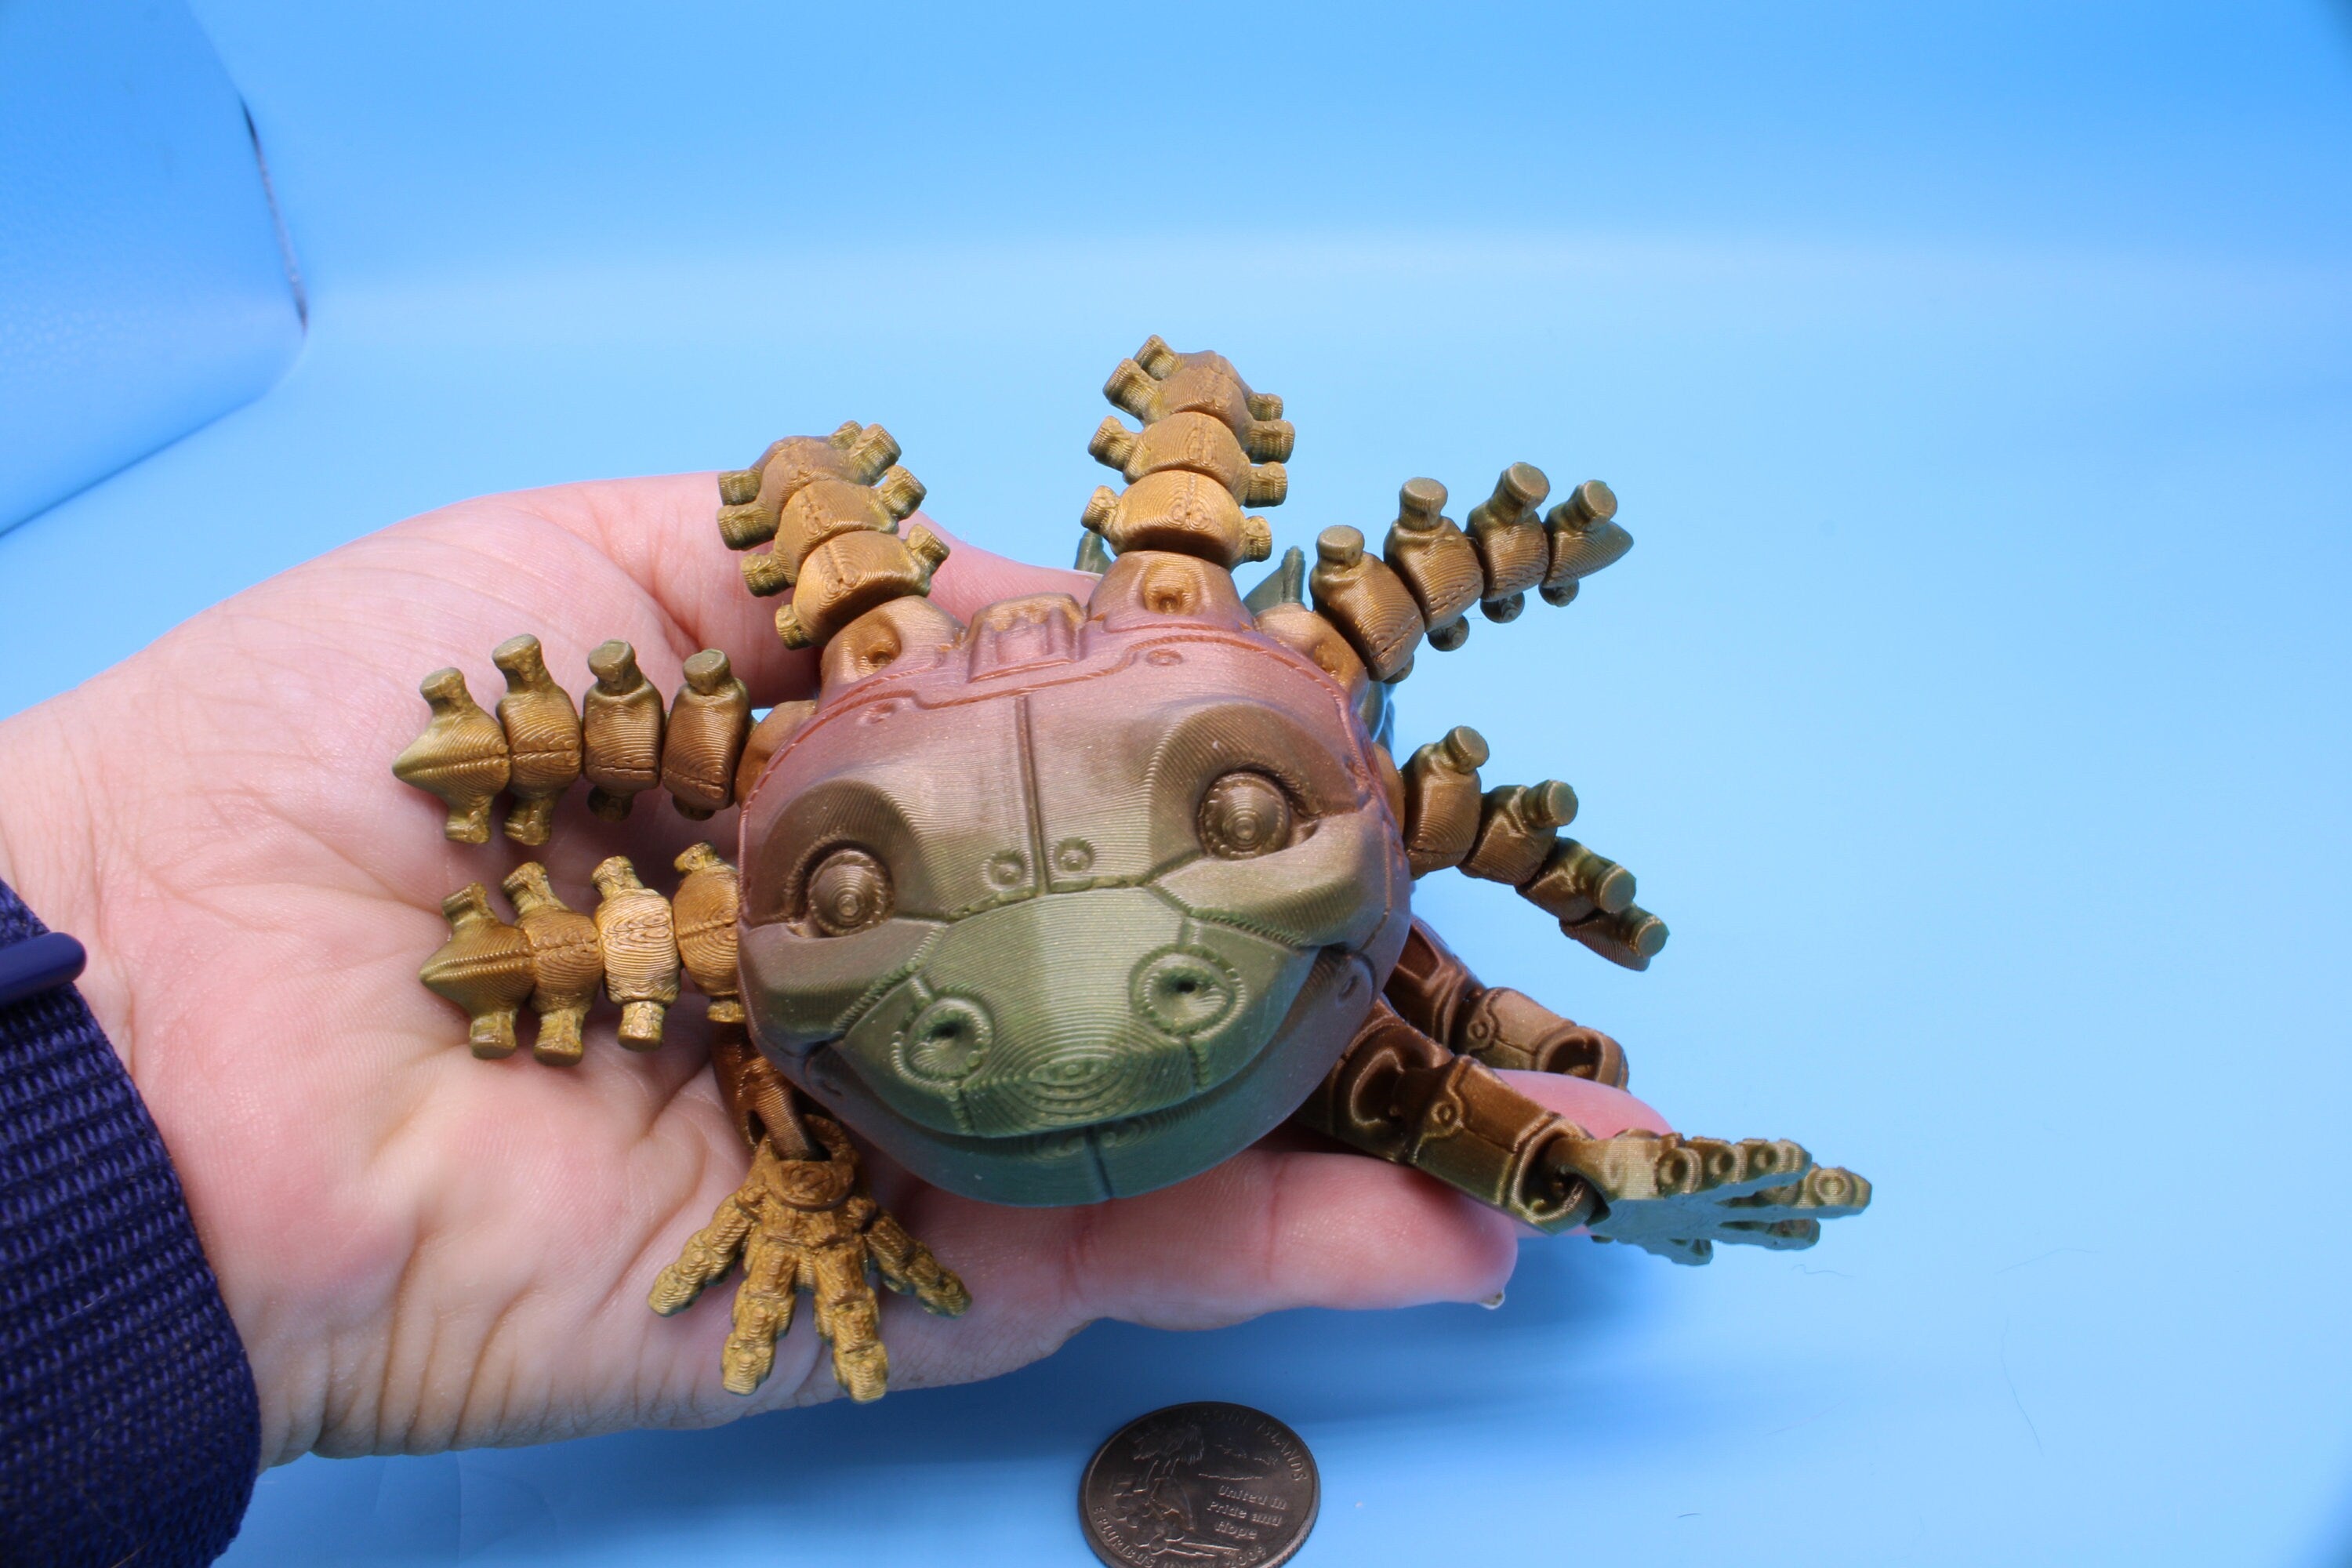 Robolotl the Robot Axolotl